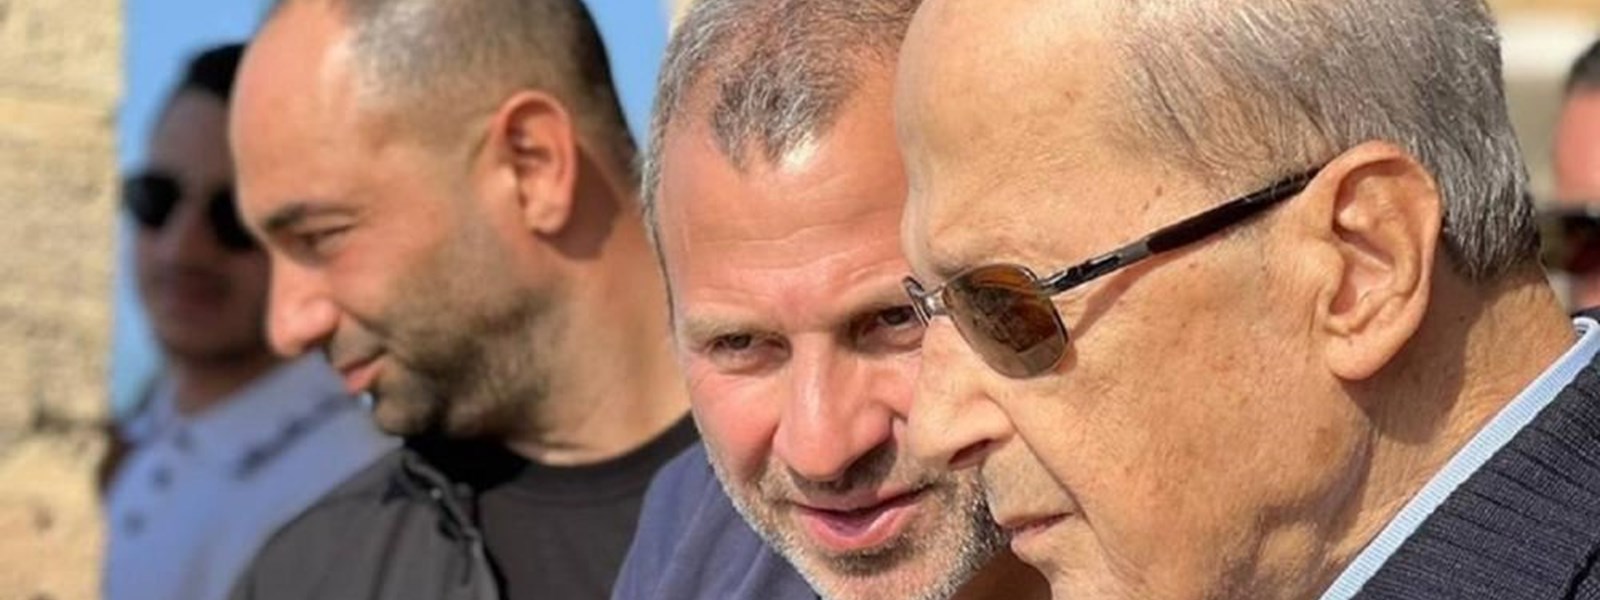 الرئيس السابق ميشال عون ورئيس "التيار الوطنيّ الحرّ" جبران باسيل